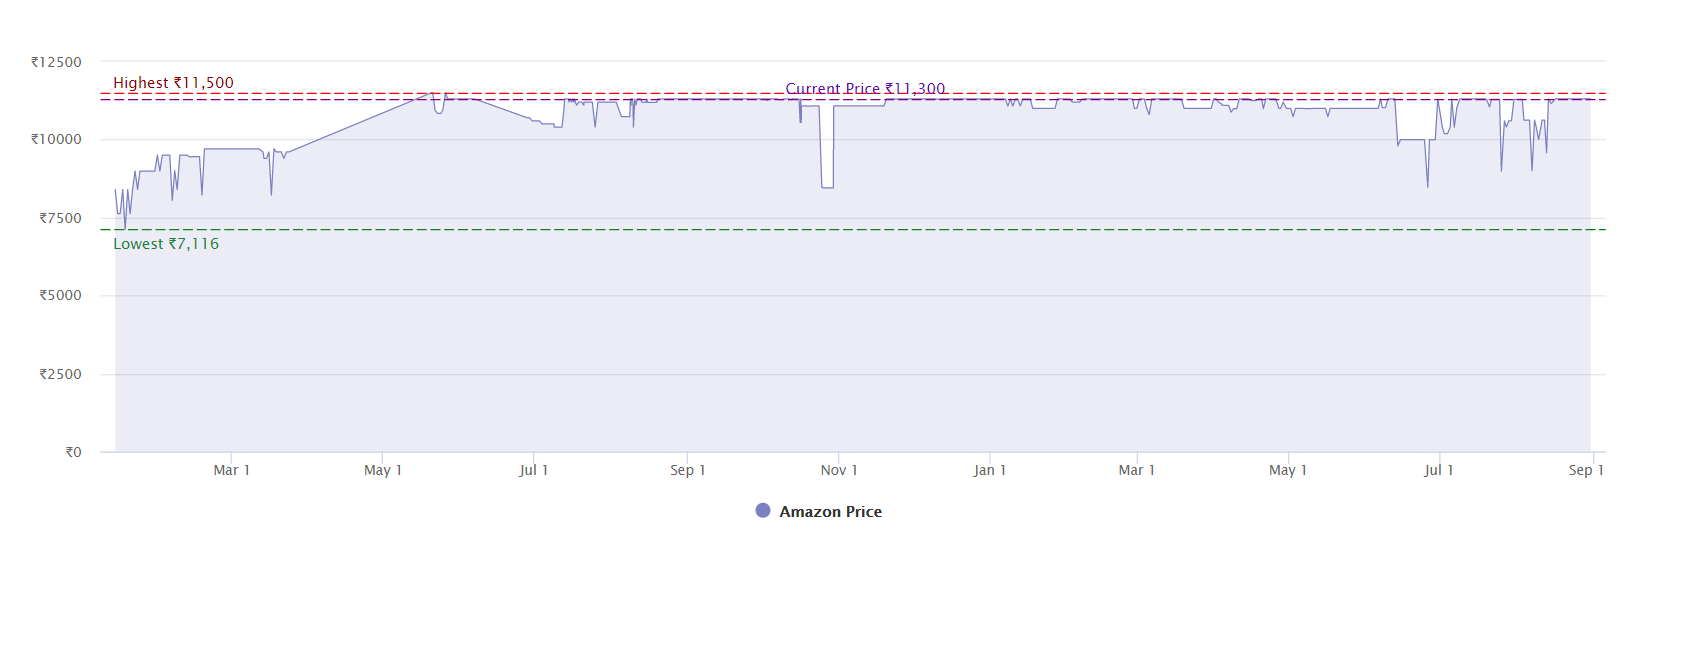 Price History of Audio Technica ATH-M50x Headphones on Amazon